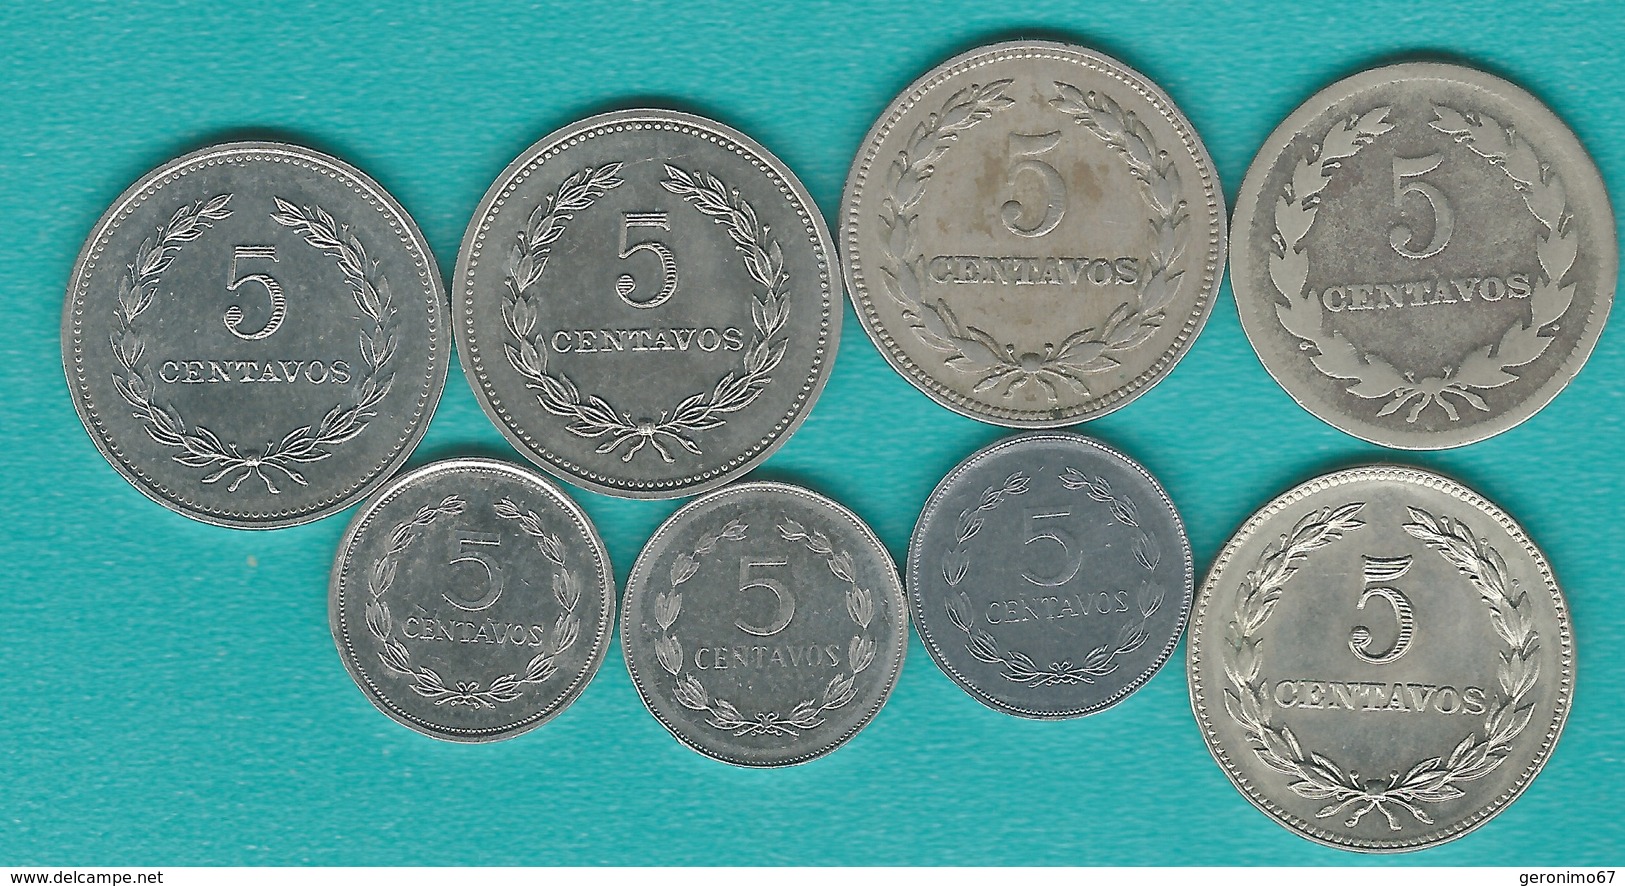 El Salvador - 5 Centavos X 8 - 1948 (KM134), 1956 (KM134a), 1975 (KM149), 1976 (KM149a), 1977 (KM149b), 1987 (KM154), 19 - El Salvador